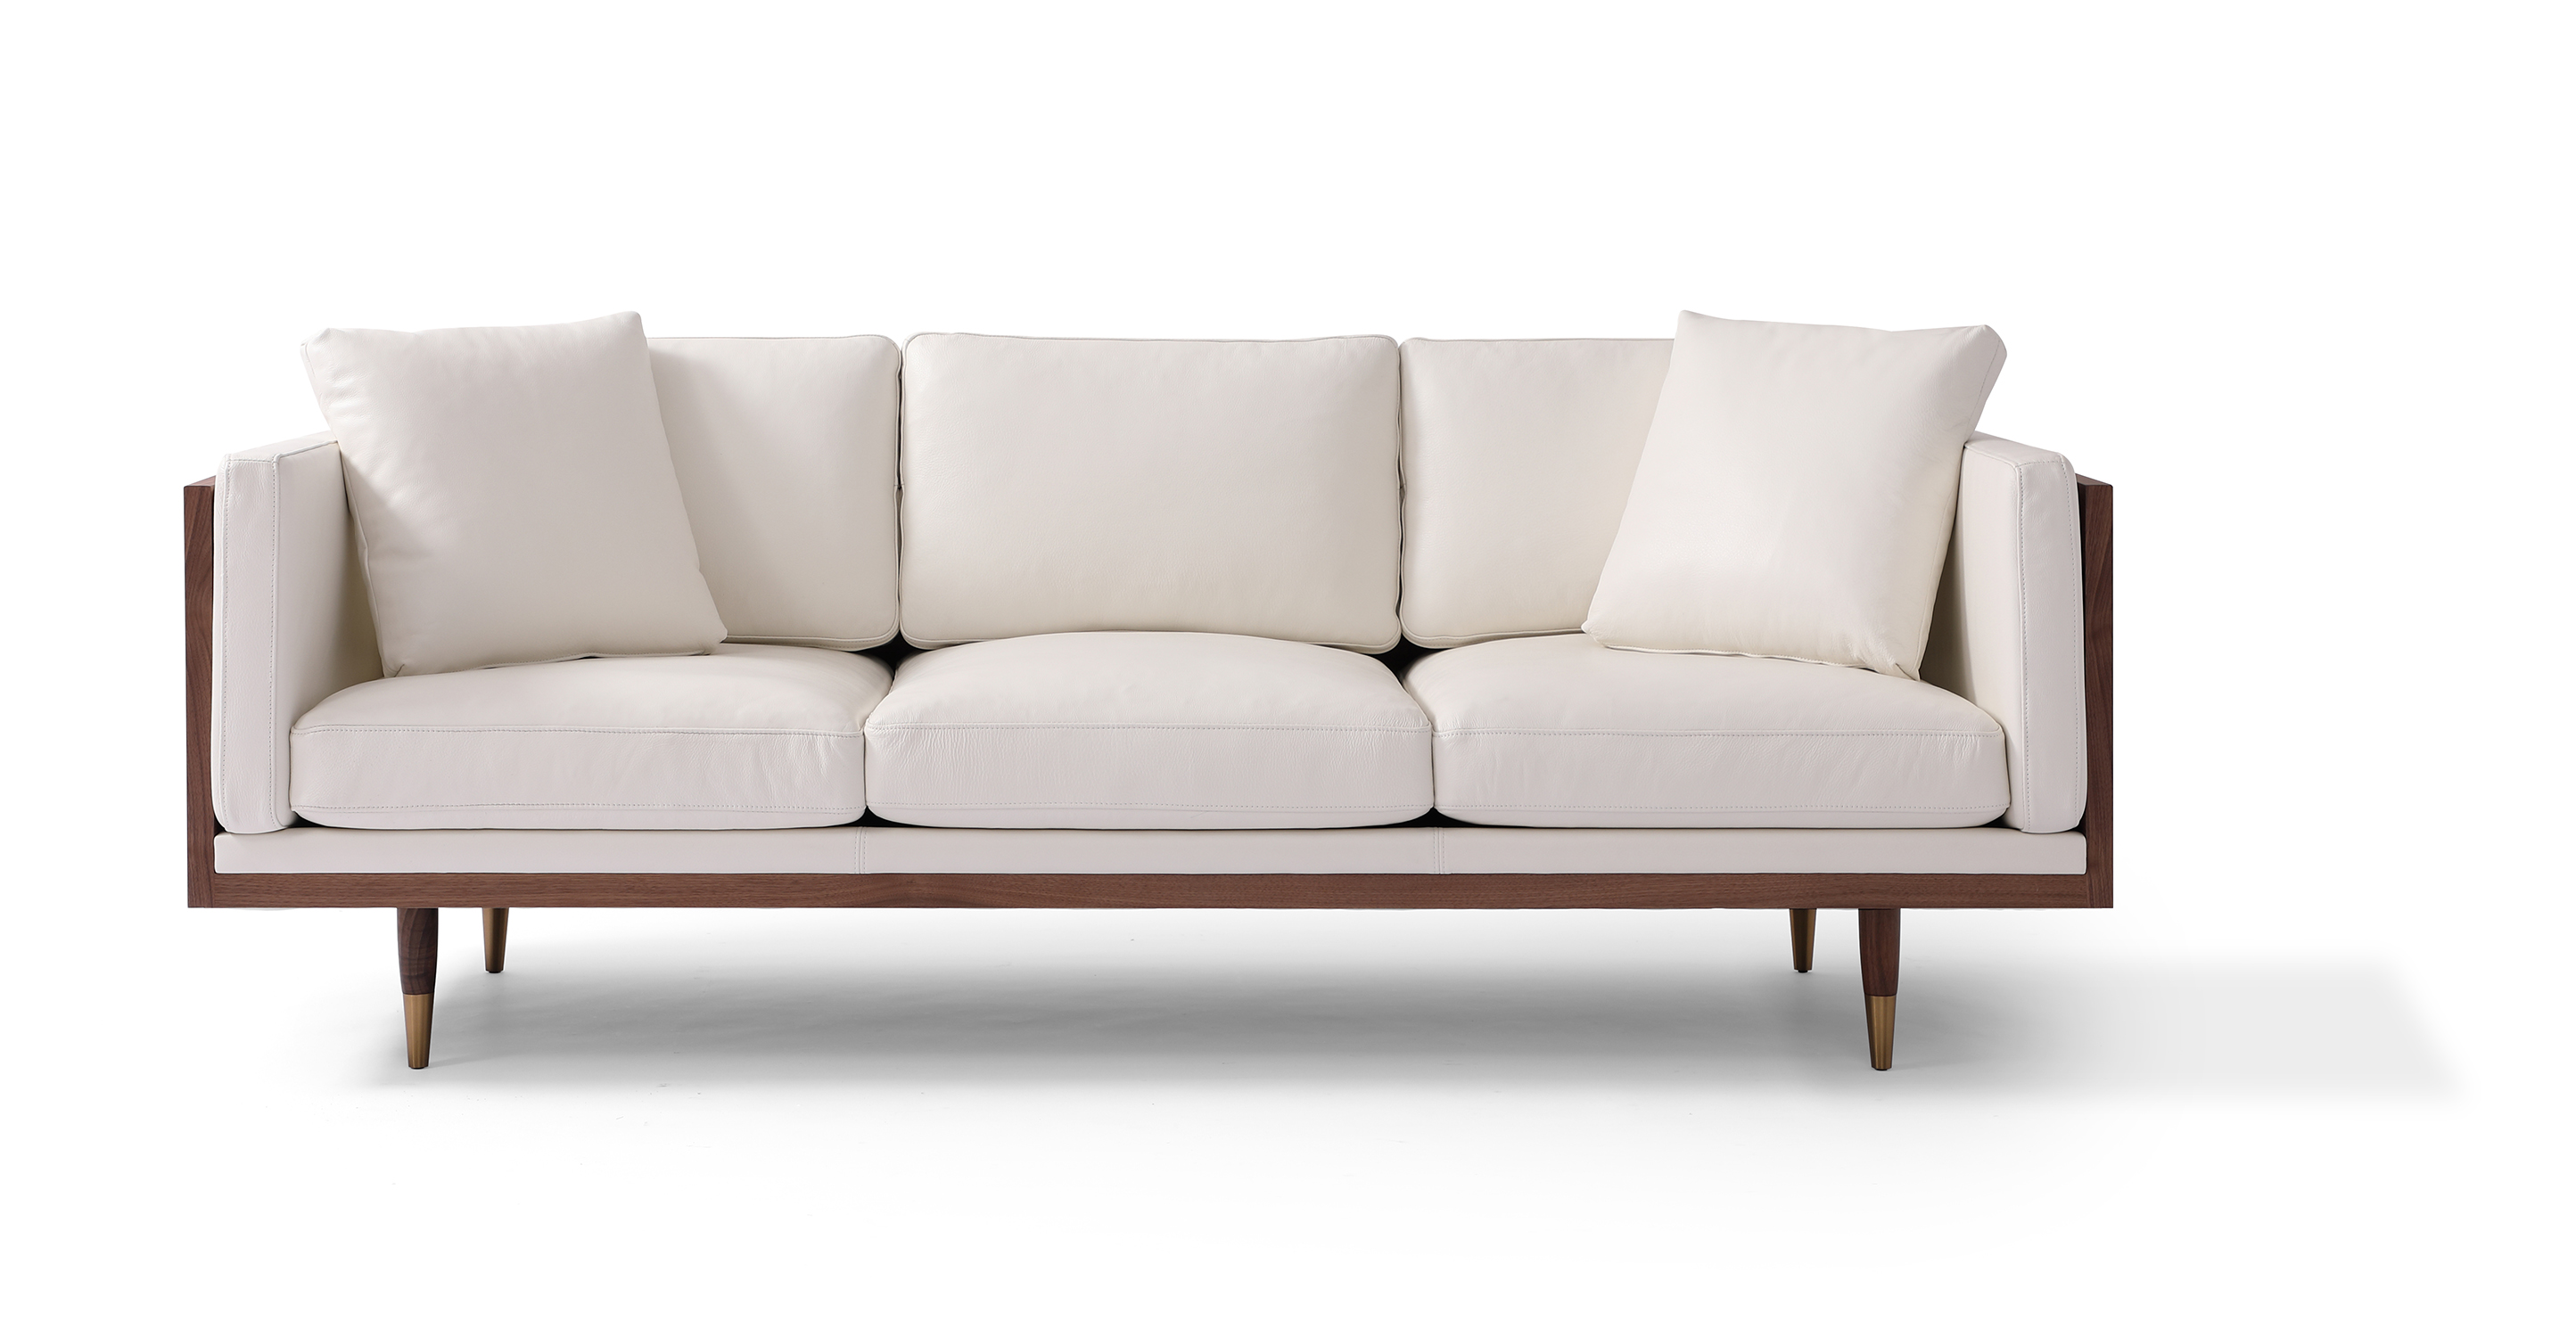 Woodrow Lush 87 Leather Sofa, Walnut/White Aniline - Kardiel